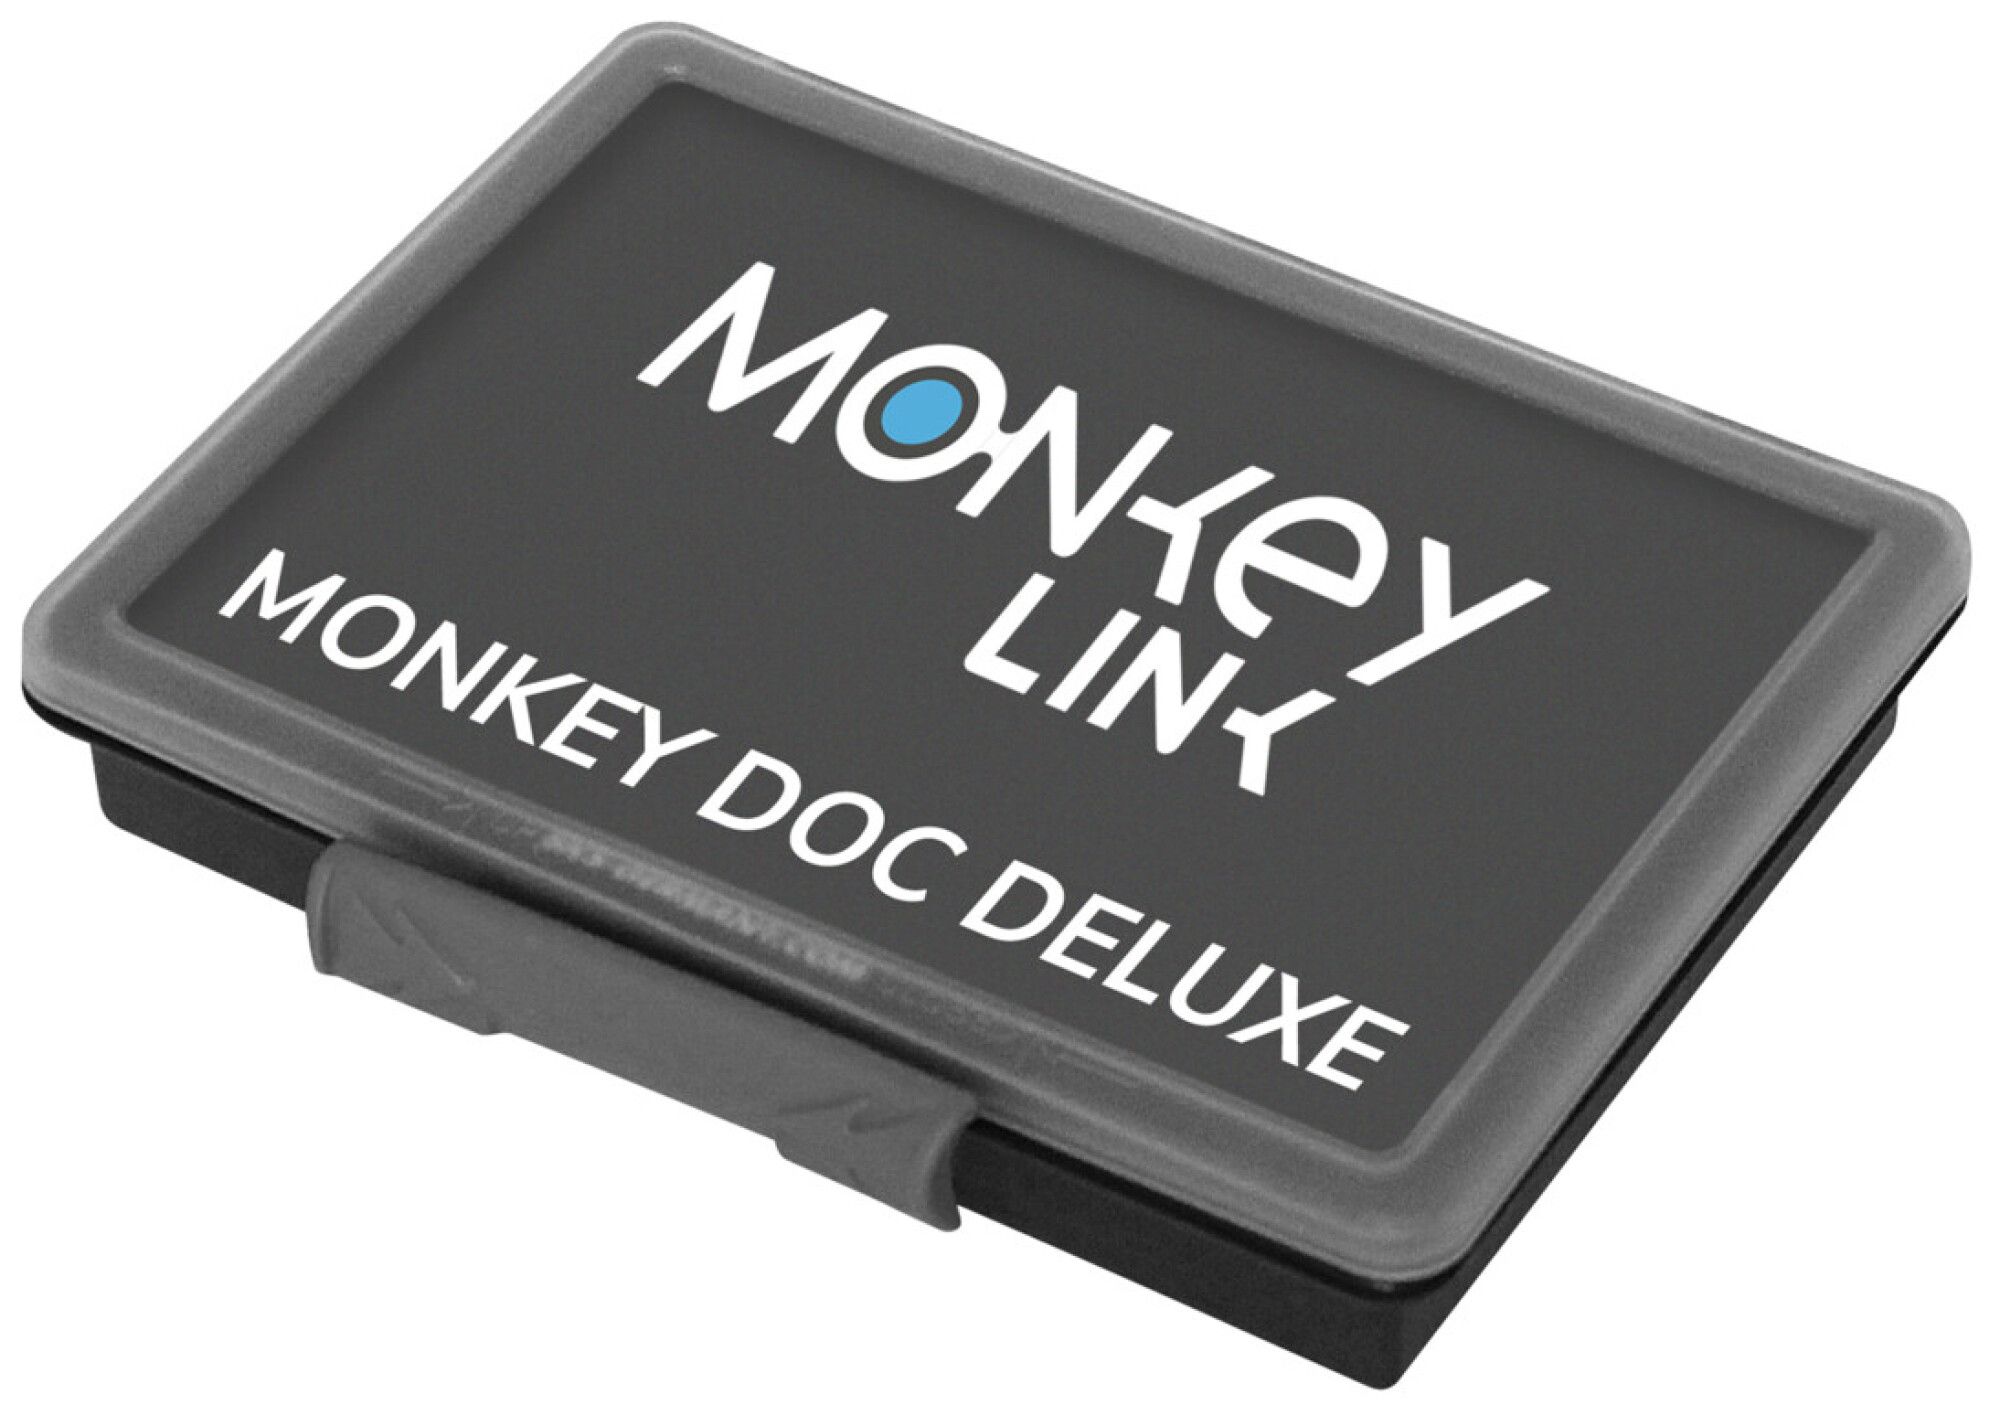 MonkeyLink MONKEYDOC DELUXE (Bild 1)